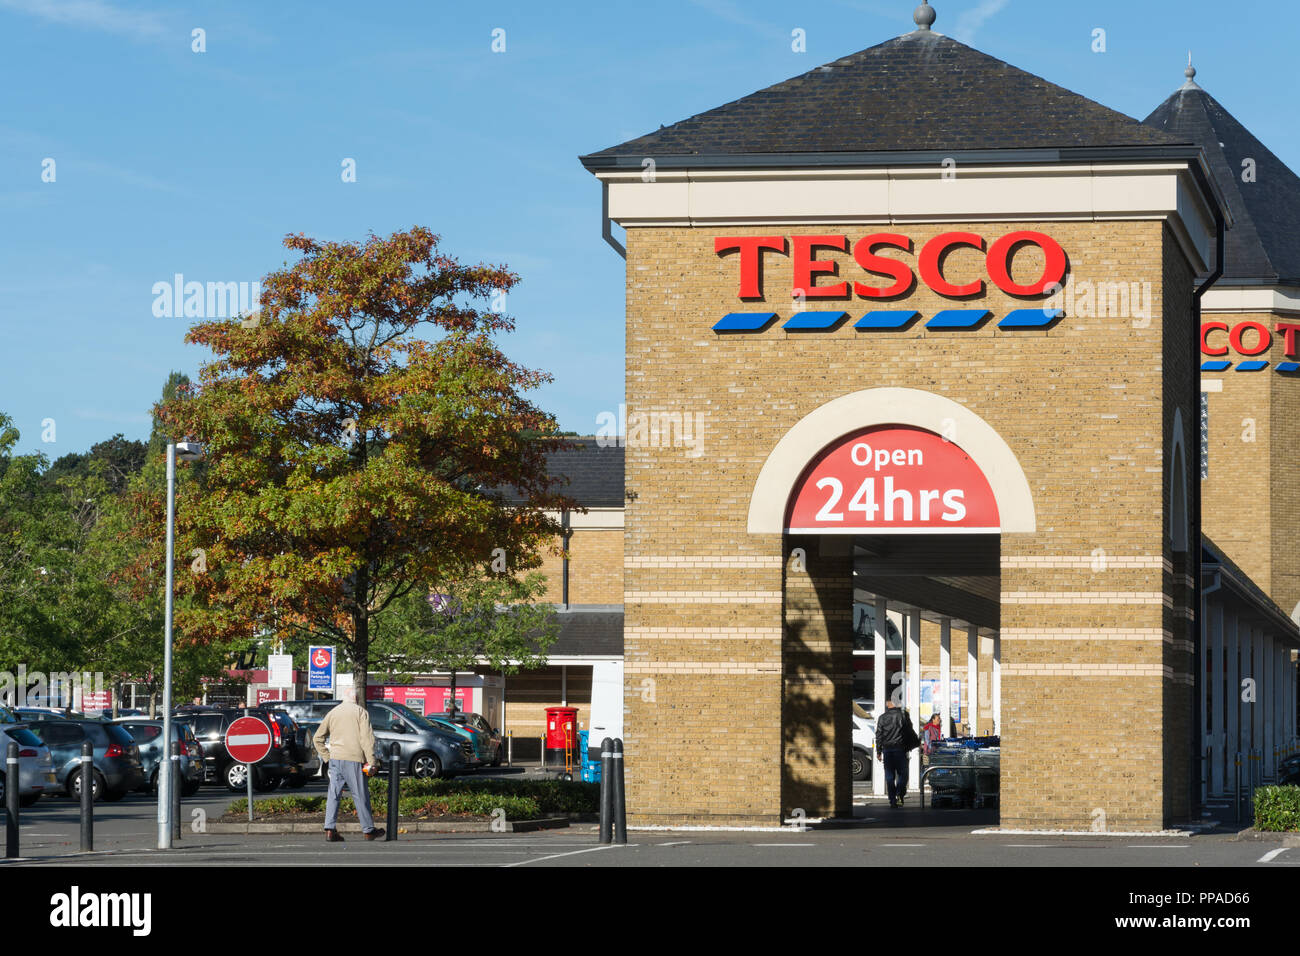 Tesco supermarket, UK Stock Photo